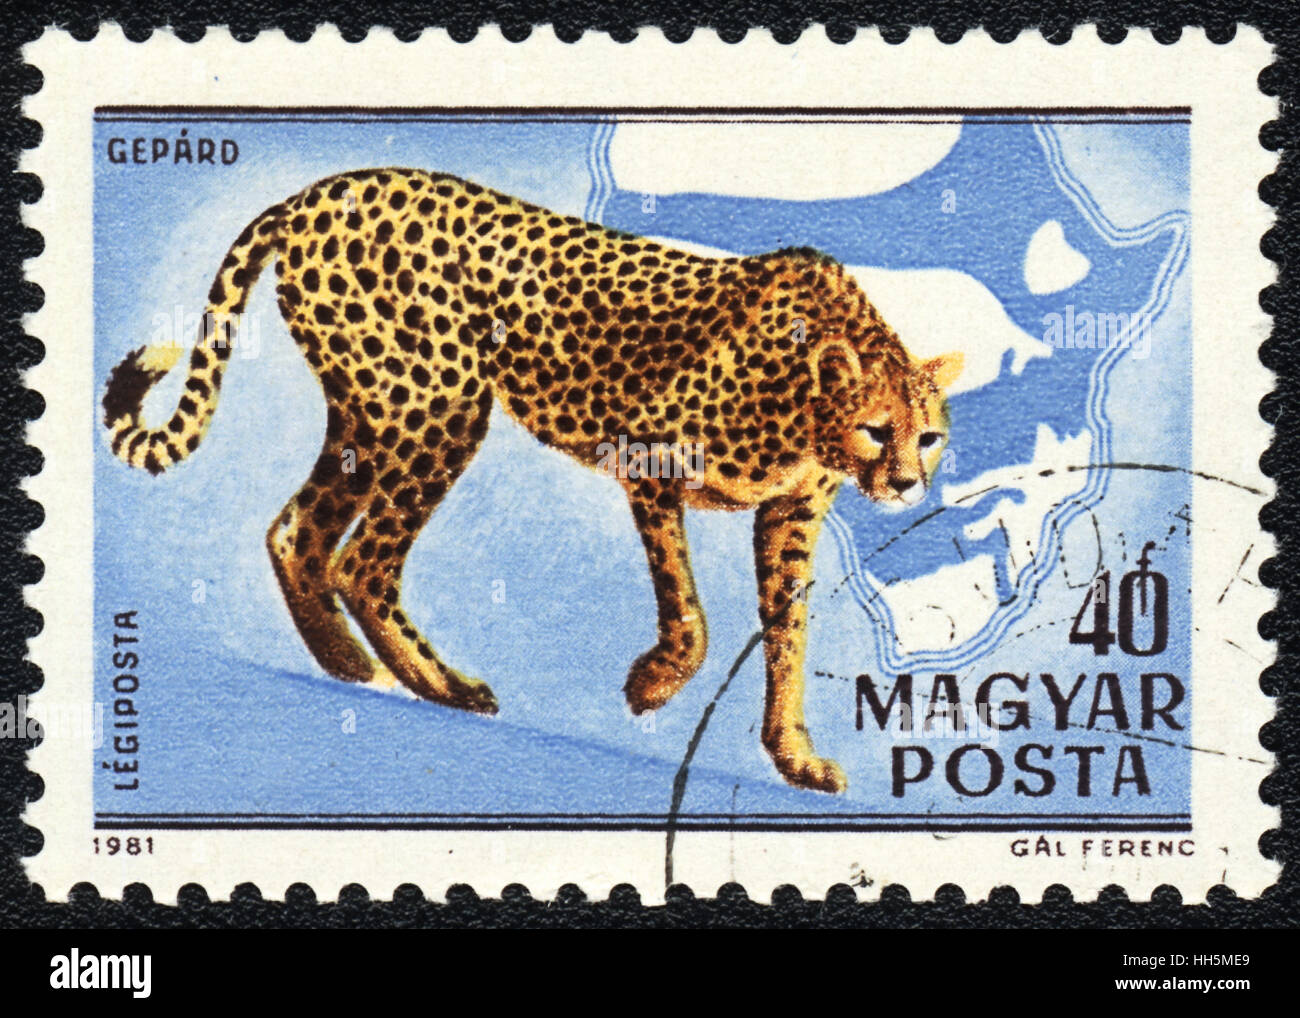 Un timbre-poste imprimé en Hongrie montre un Acinonyx jubatus, série L'Afrique, 1981 Banque D'Images